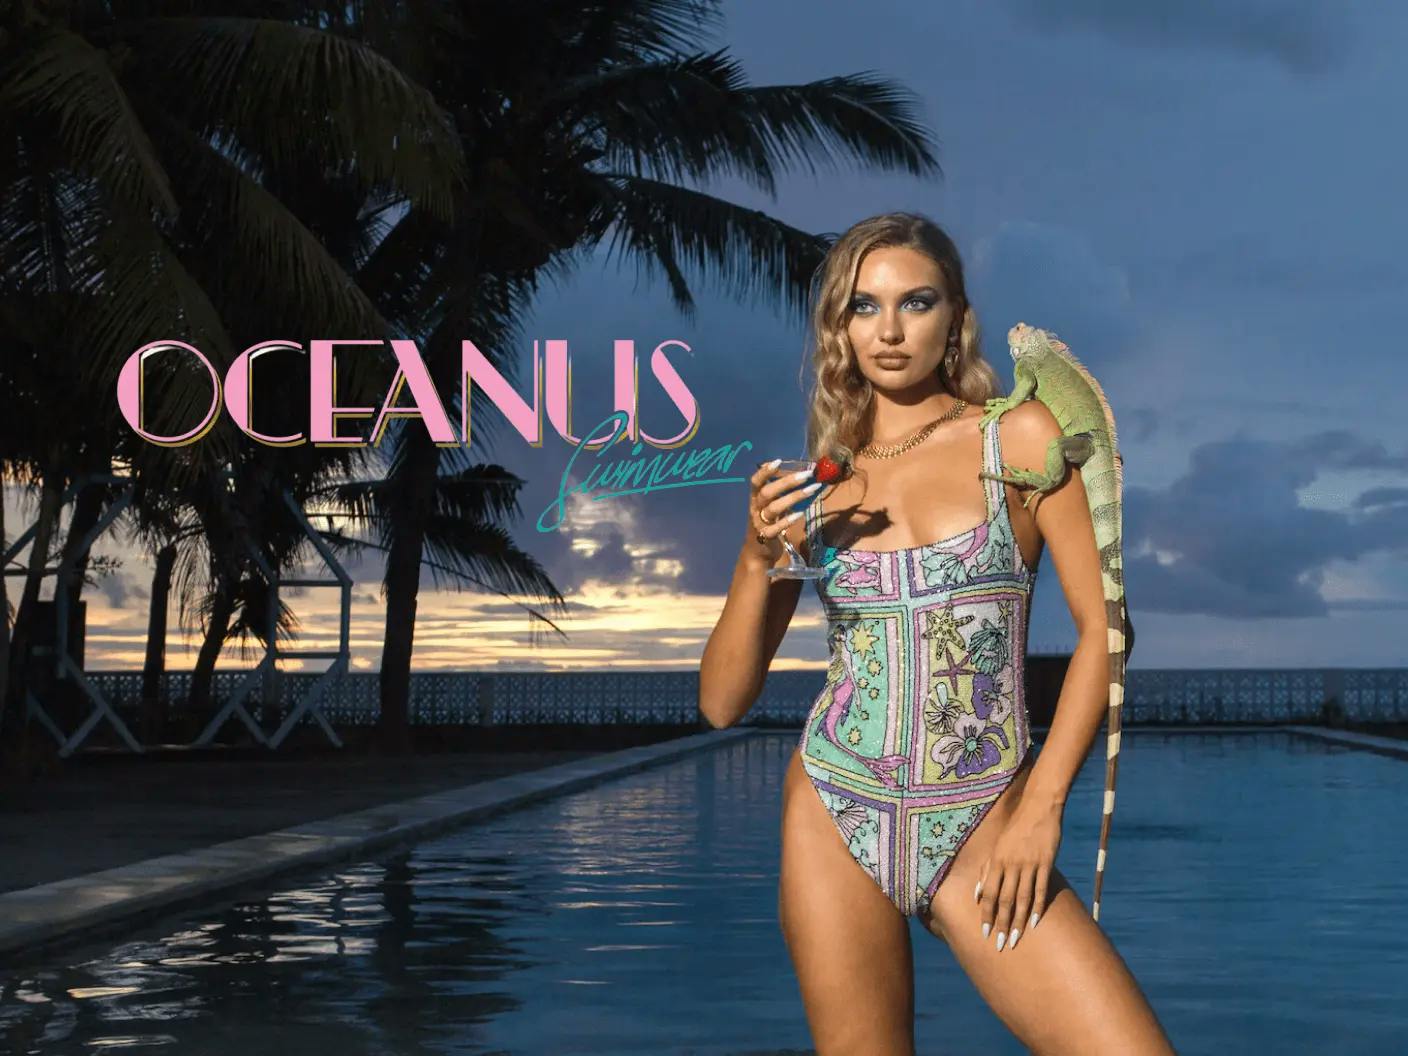 Oceanus Swimwear portfolio case study